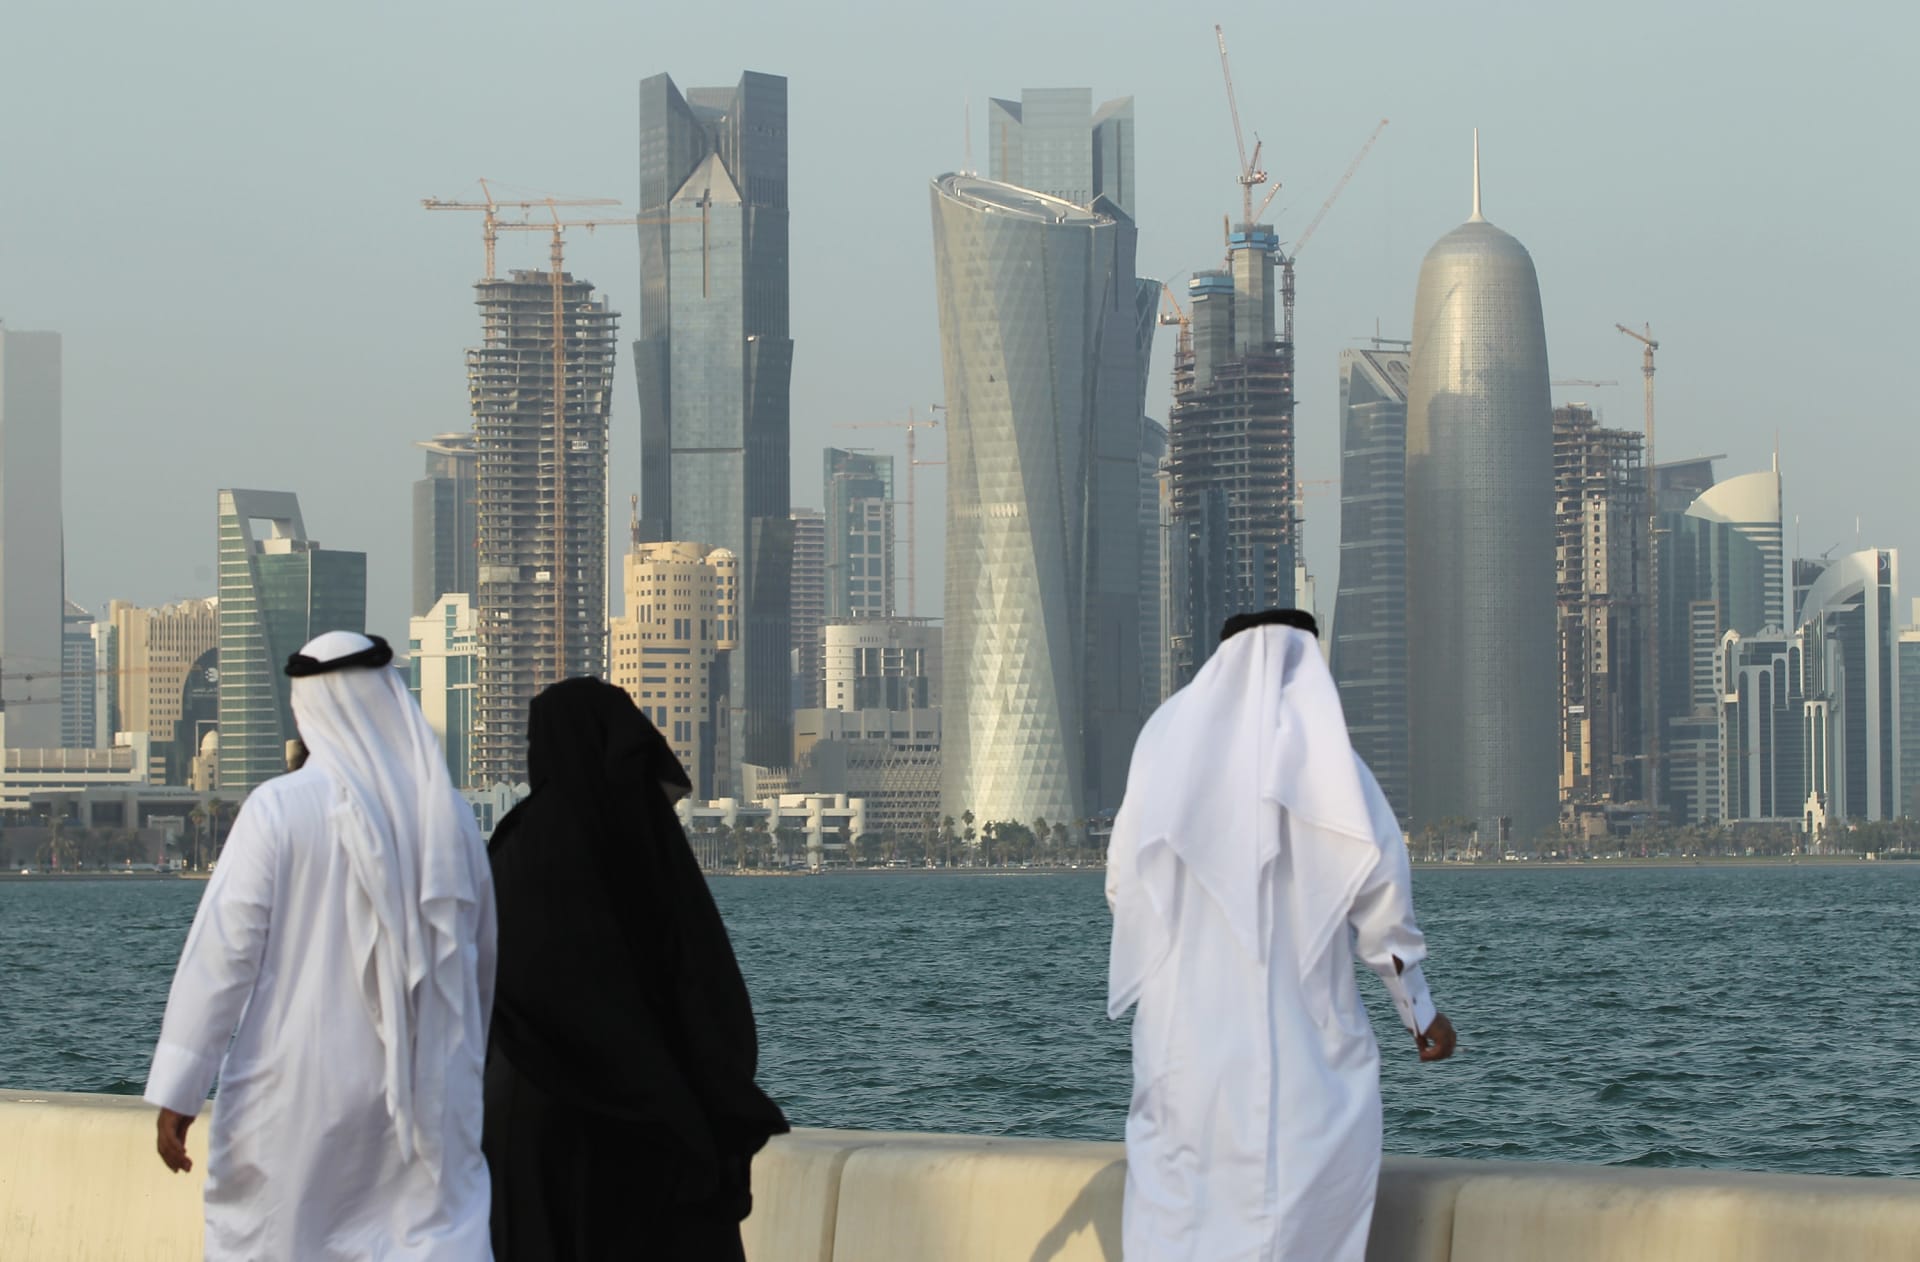 هيومن رايتس ووتش: إجراءات قانون الإقامة في قطر توفر الأمن للمغتربين ولكن تميّز ضد النساء